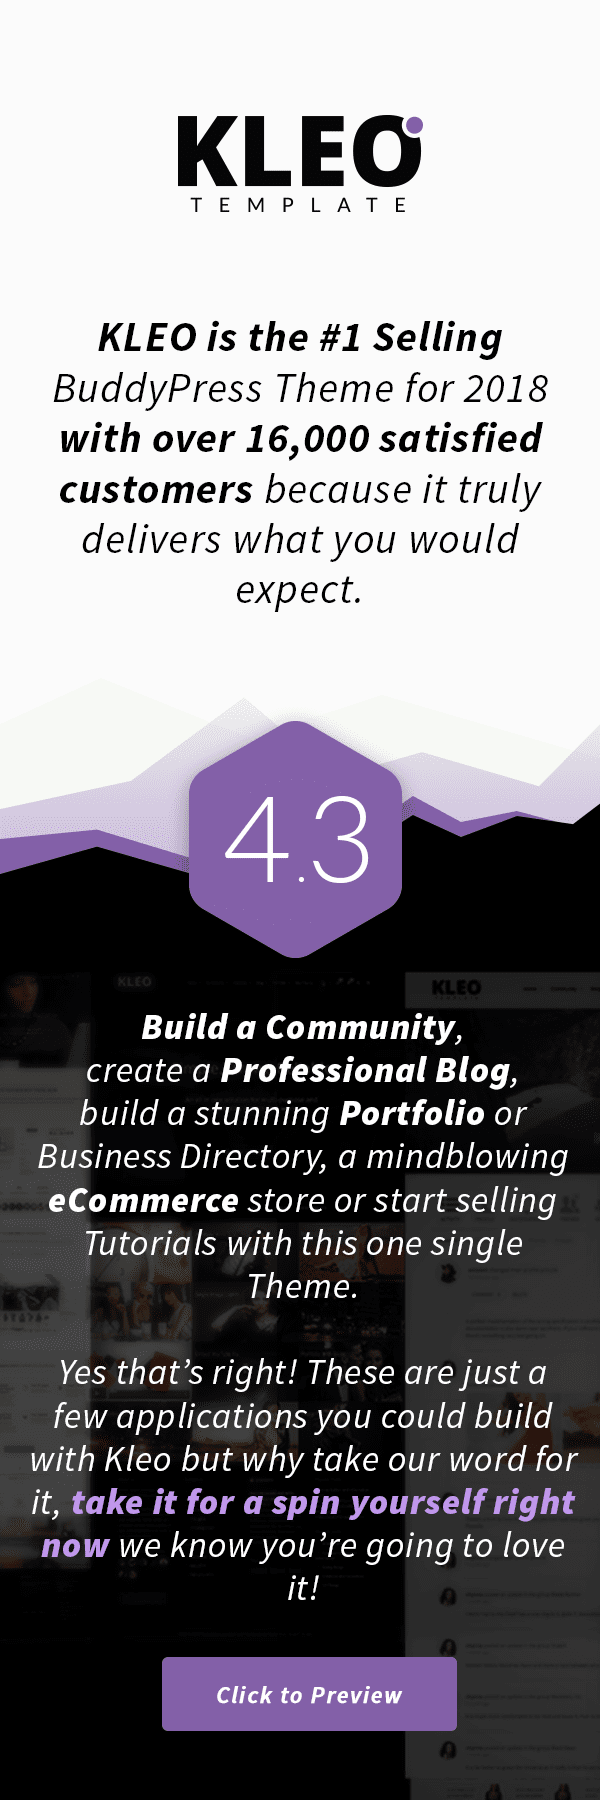 KLEO - Tema de BuddyPress enfocado en la comunidad profesional y multipropósito - 1